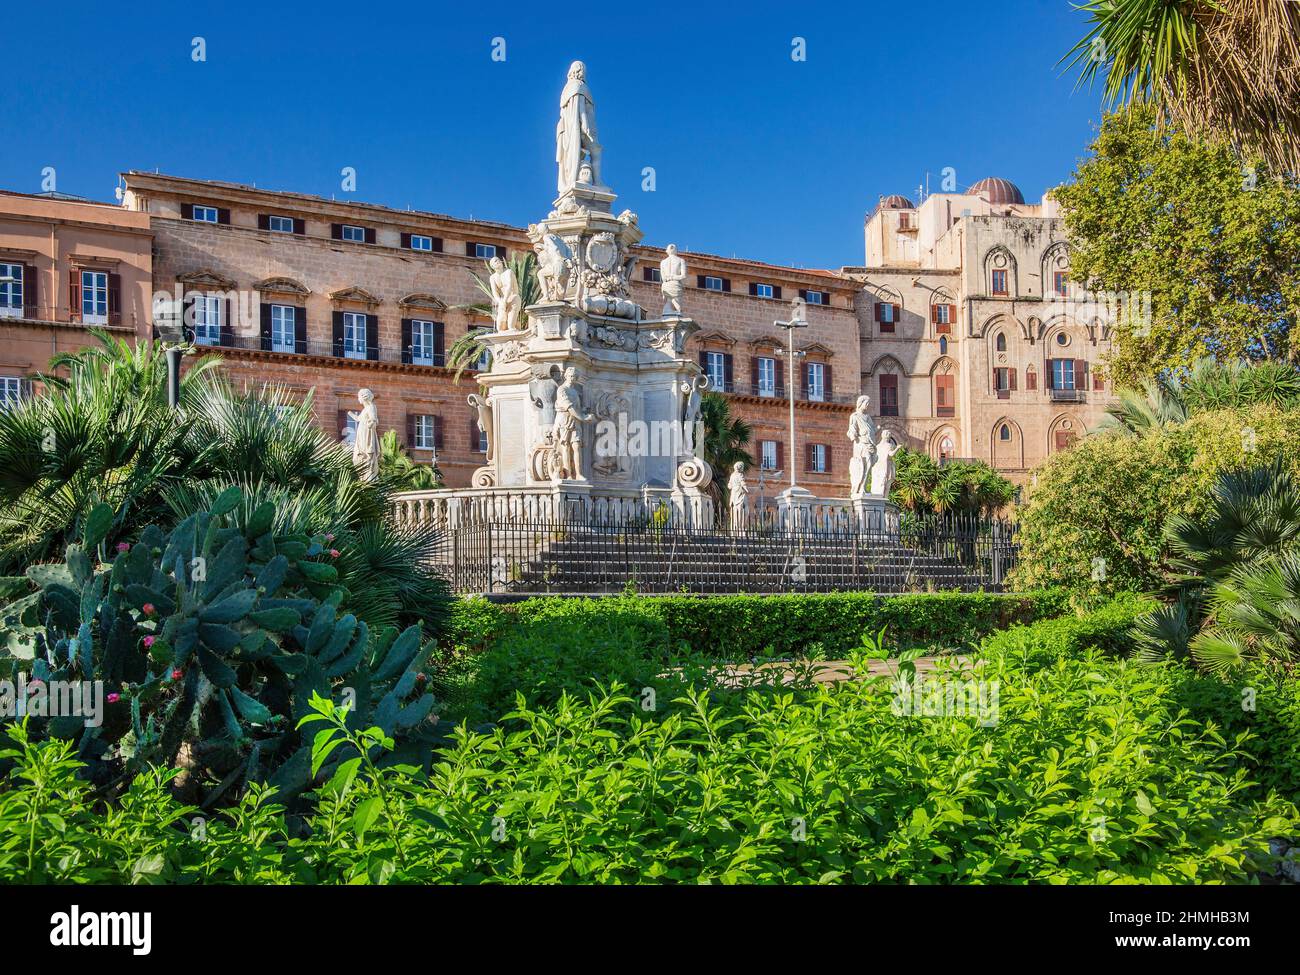 Teatro Marmoreo con monumento a Felipe V frente al Palazzo Reale (Palazzo dei Normanni), Palermo, Sicilia, Italia Foto de stock